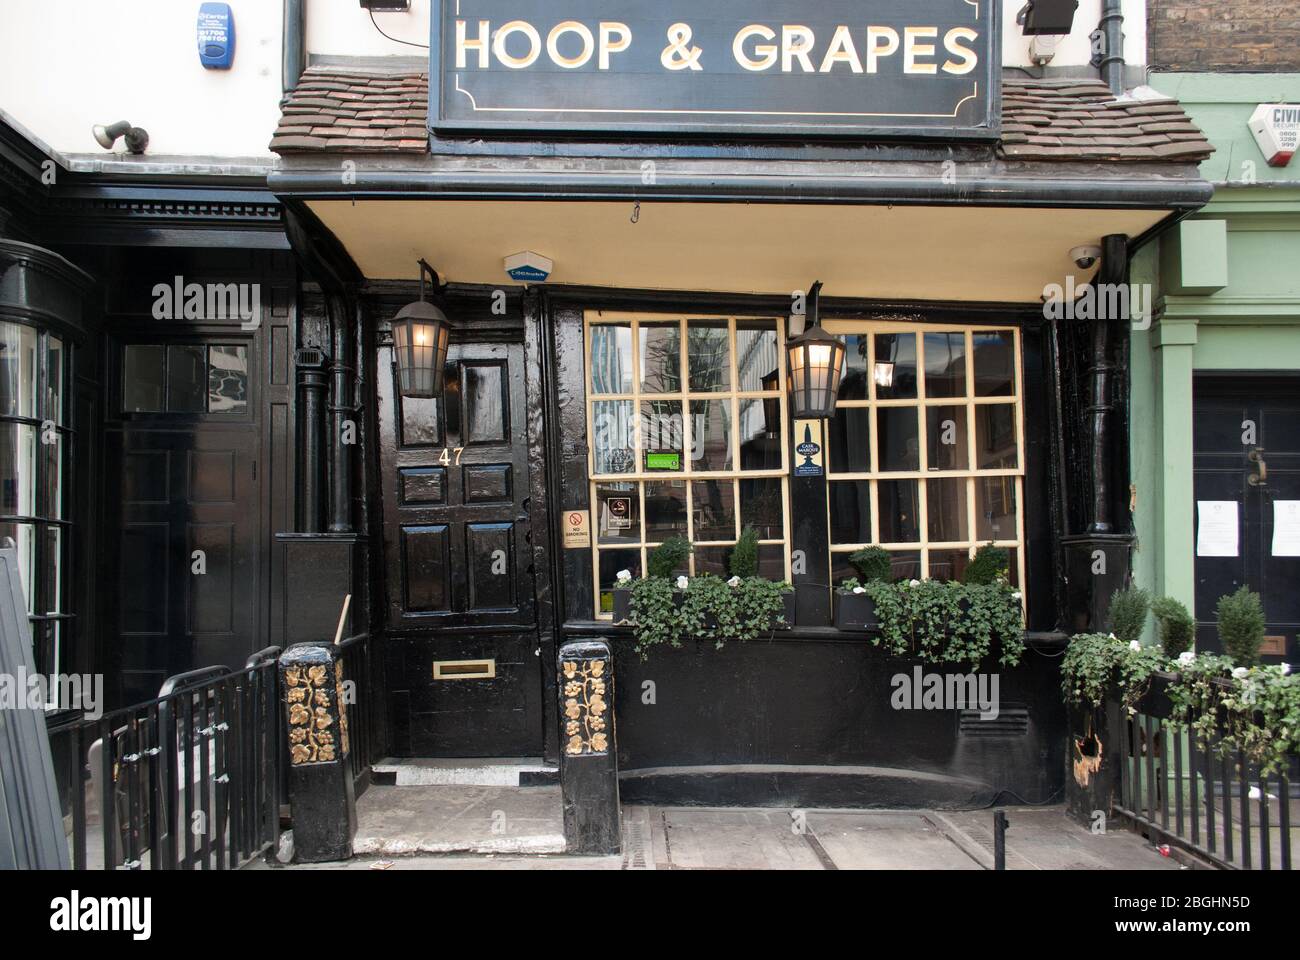 Public House Hoop & Grapes Pub, 47 Aldgate High St, London EC3N 1AL Stock  Photo - Alamy